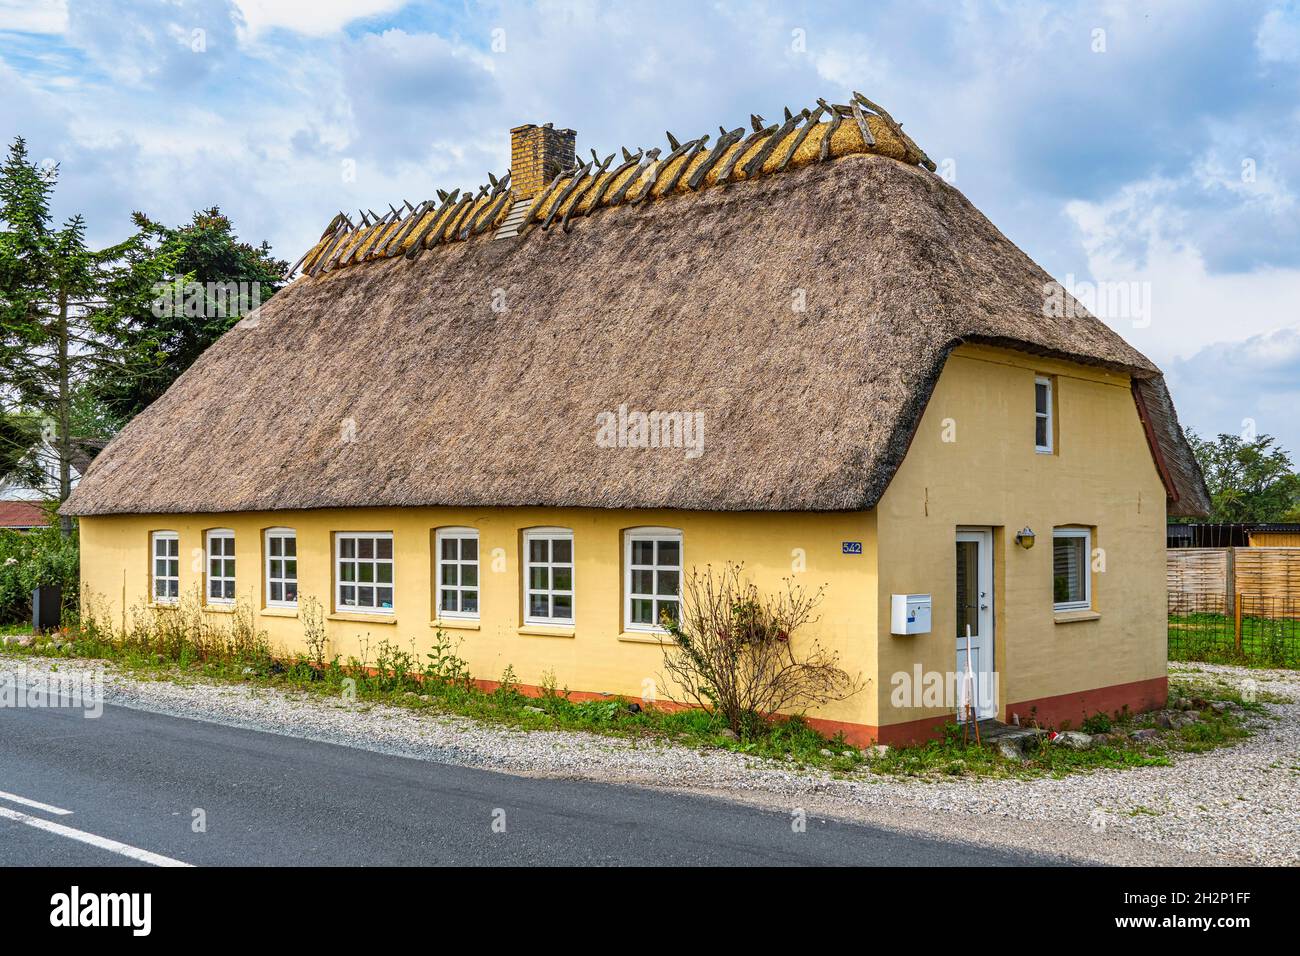 Tipica casa danese gialla. Tradizionale riparazione e costruzione del tetto con paglia e legno. Danimarca, Europa Foto Stock